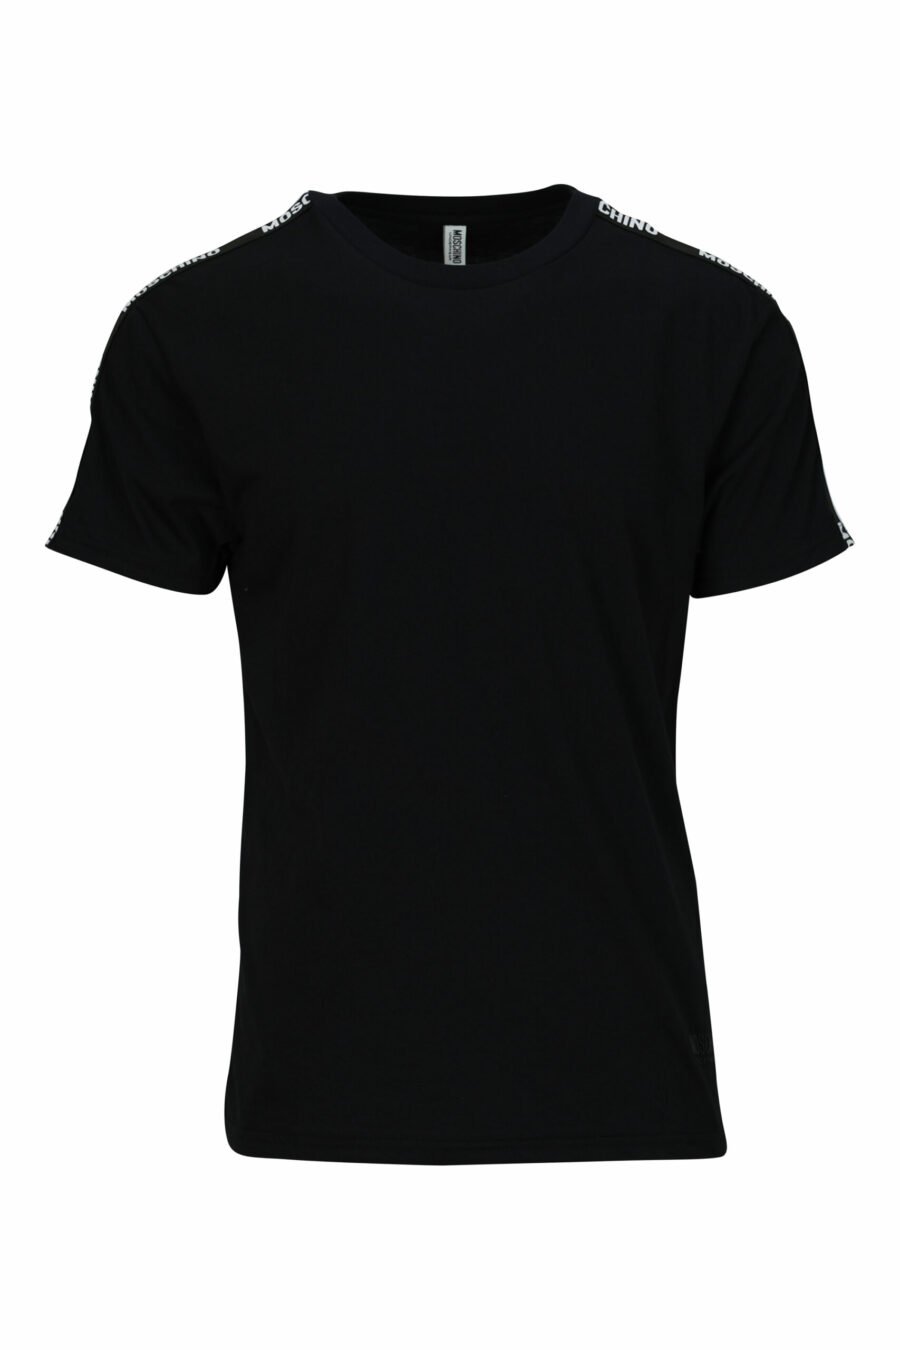 Camiseta negra con minilogo en cinta - 667113602967 scaled